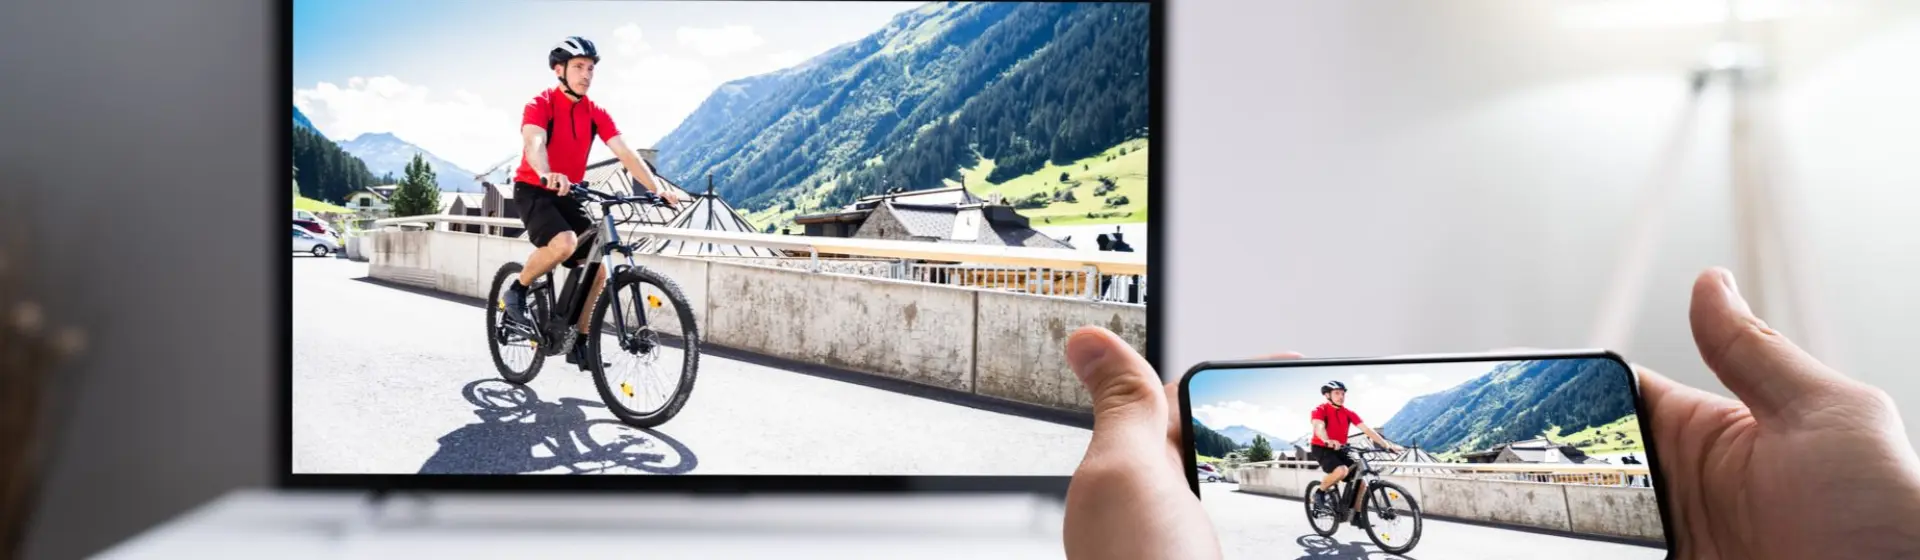 Mão de pessoa segurando smartphone e fazendo processo de espelhar celular na TV com imagem de homem andando de bicicleta 